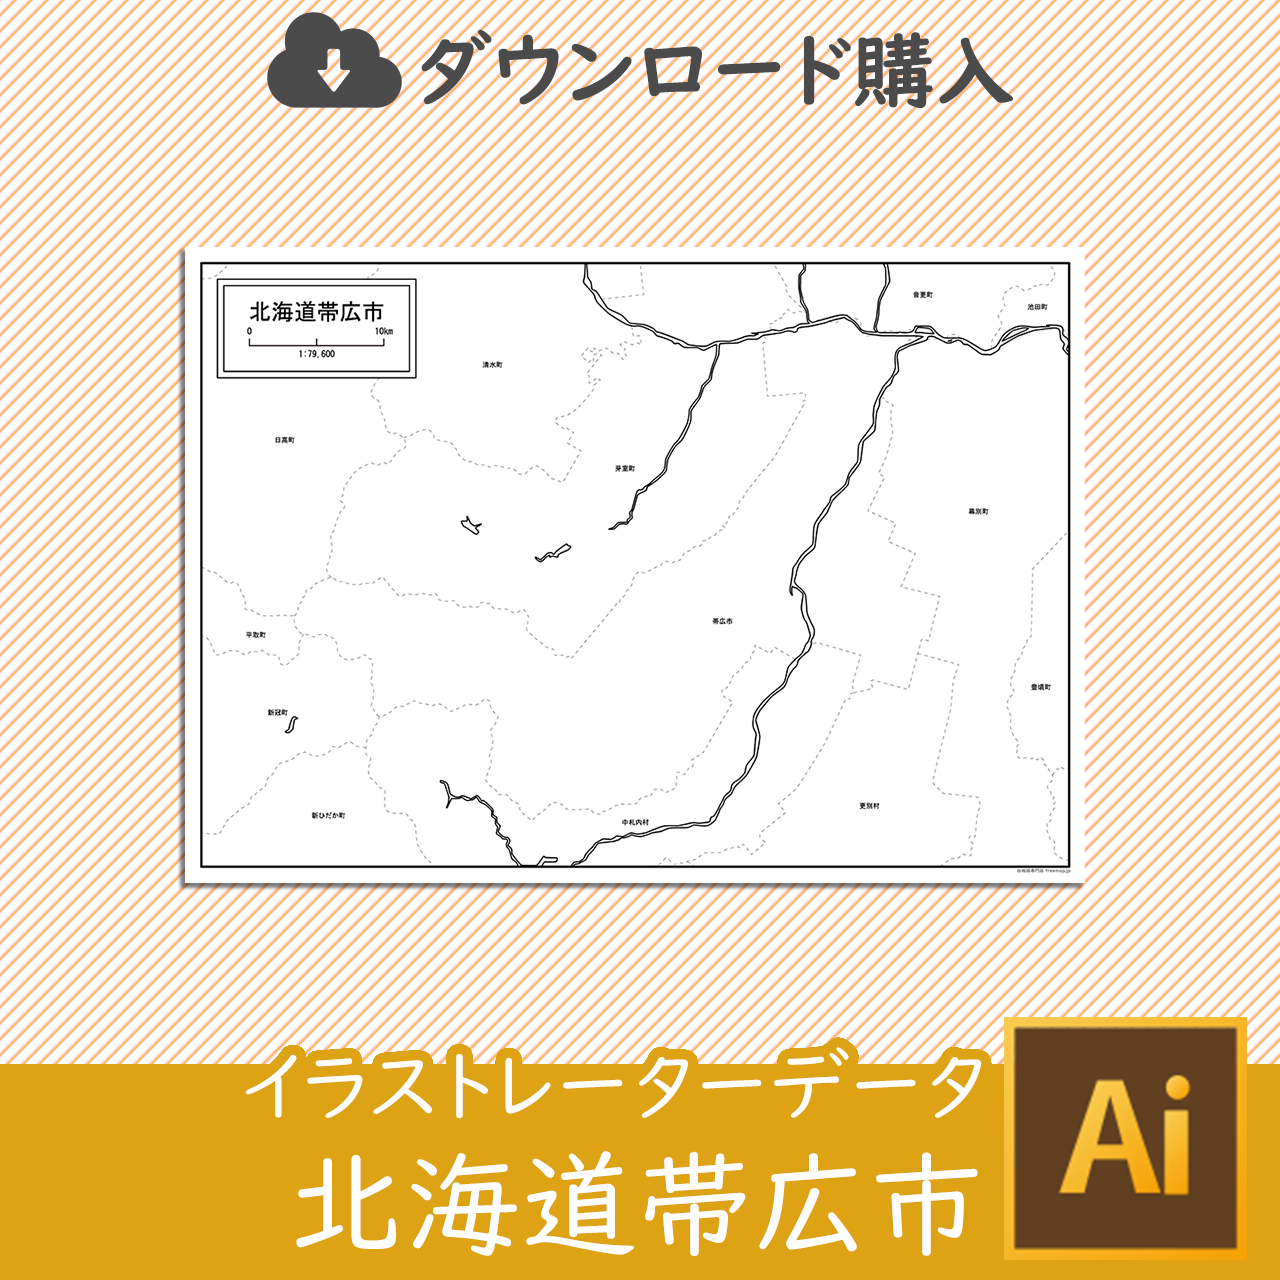 帯広市の白地図のサムネイル